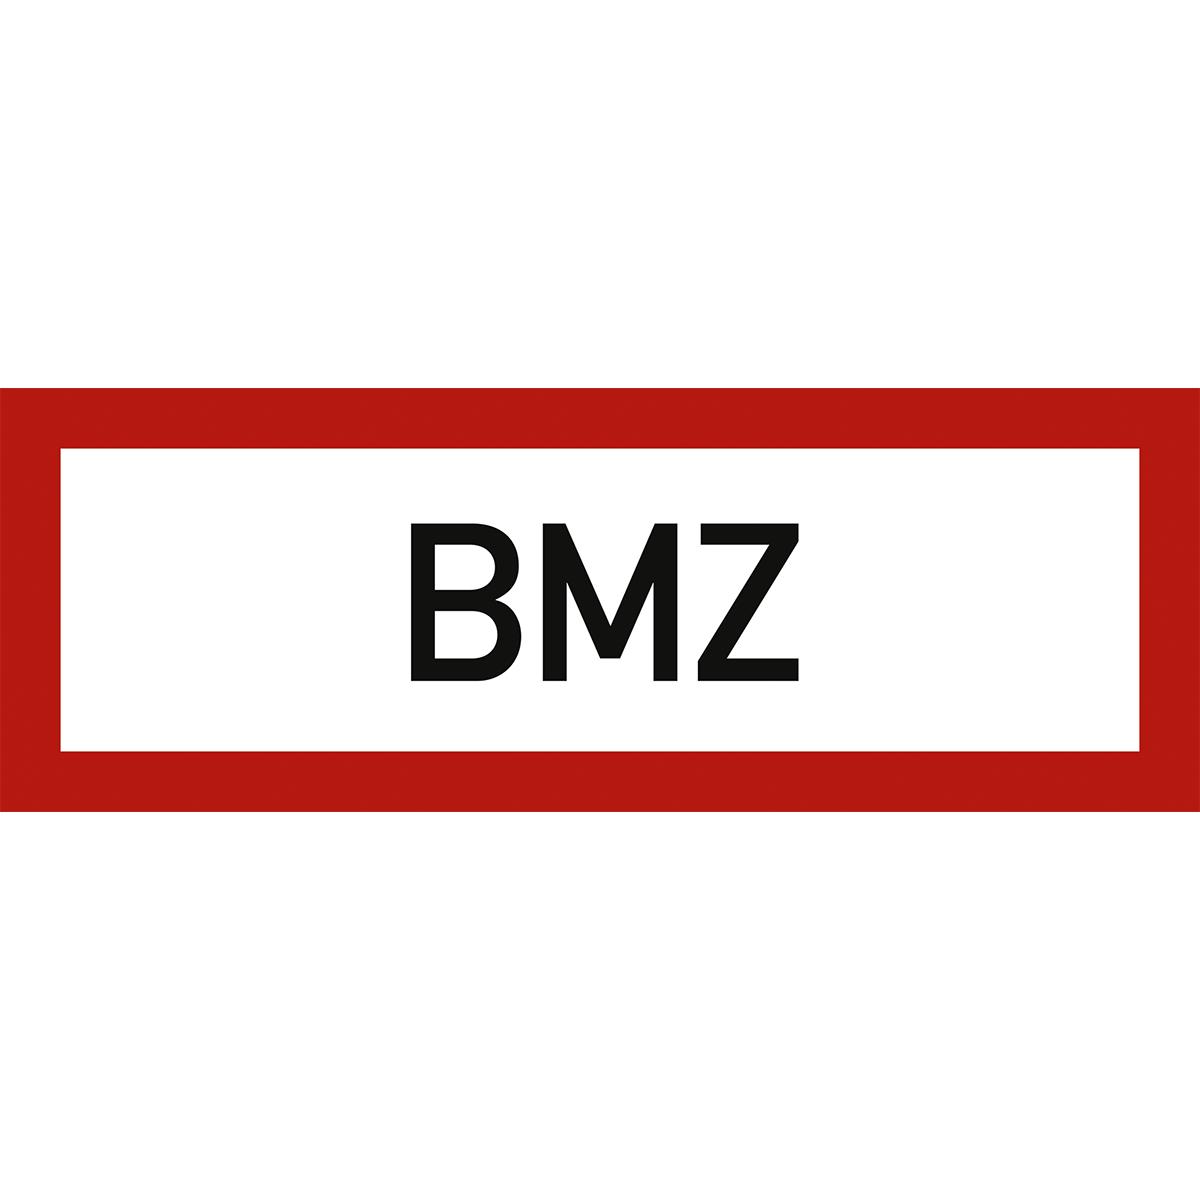 Hinweisschild mit dem Text: BMZ